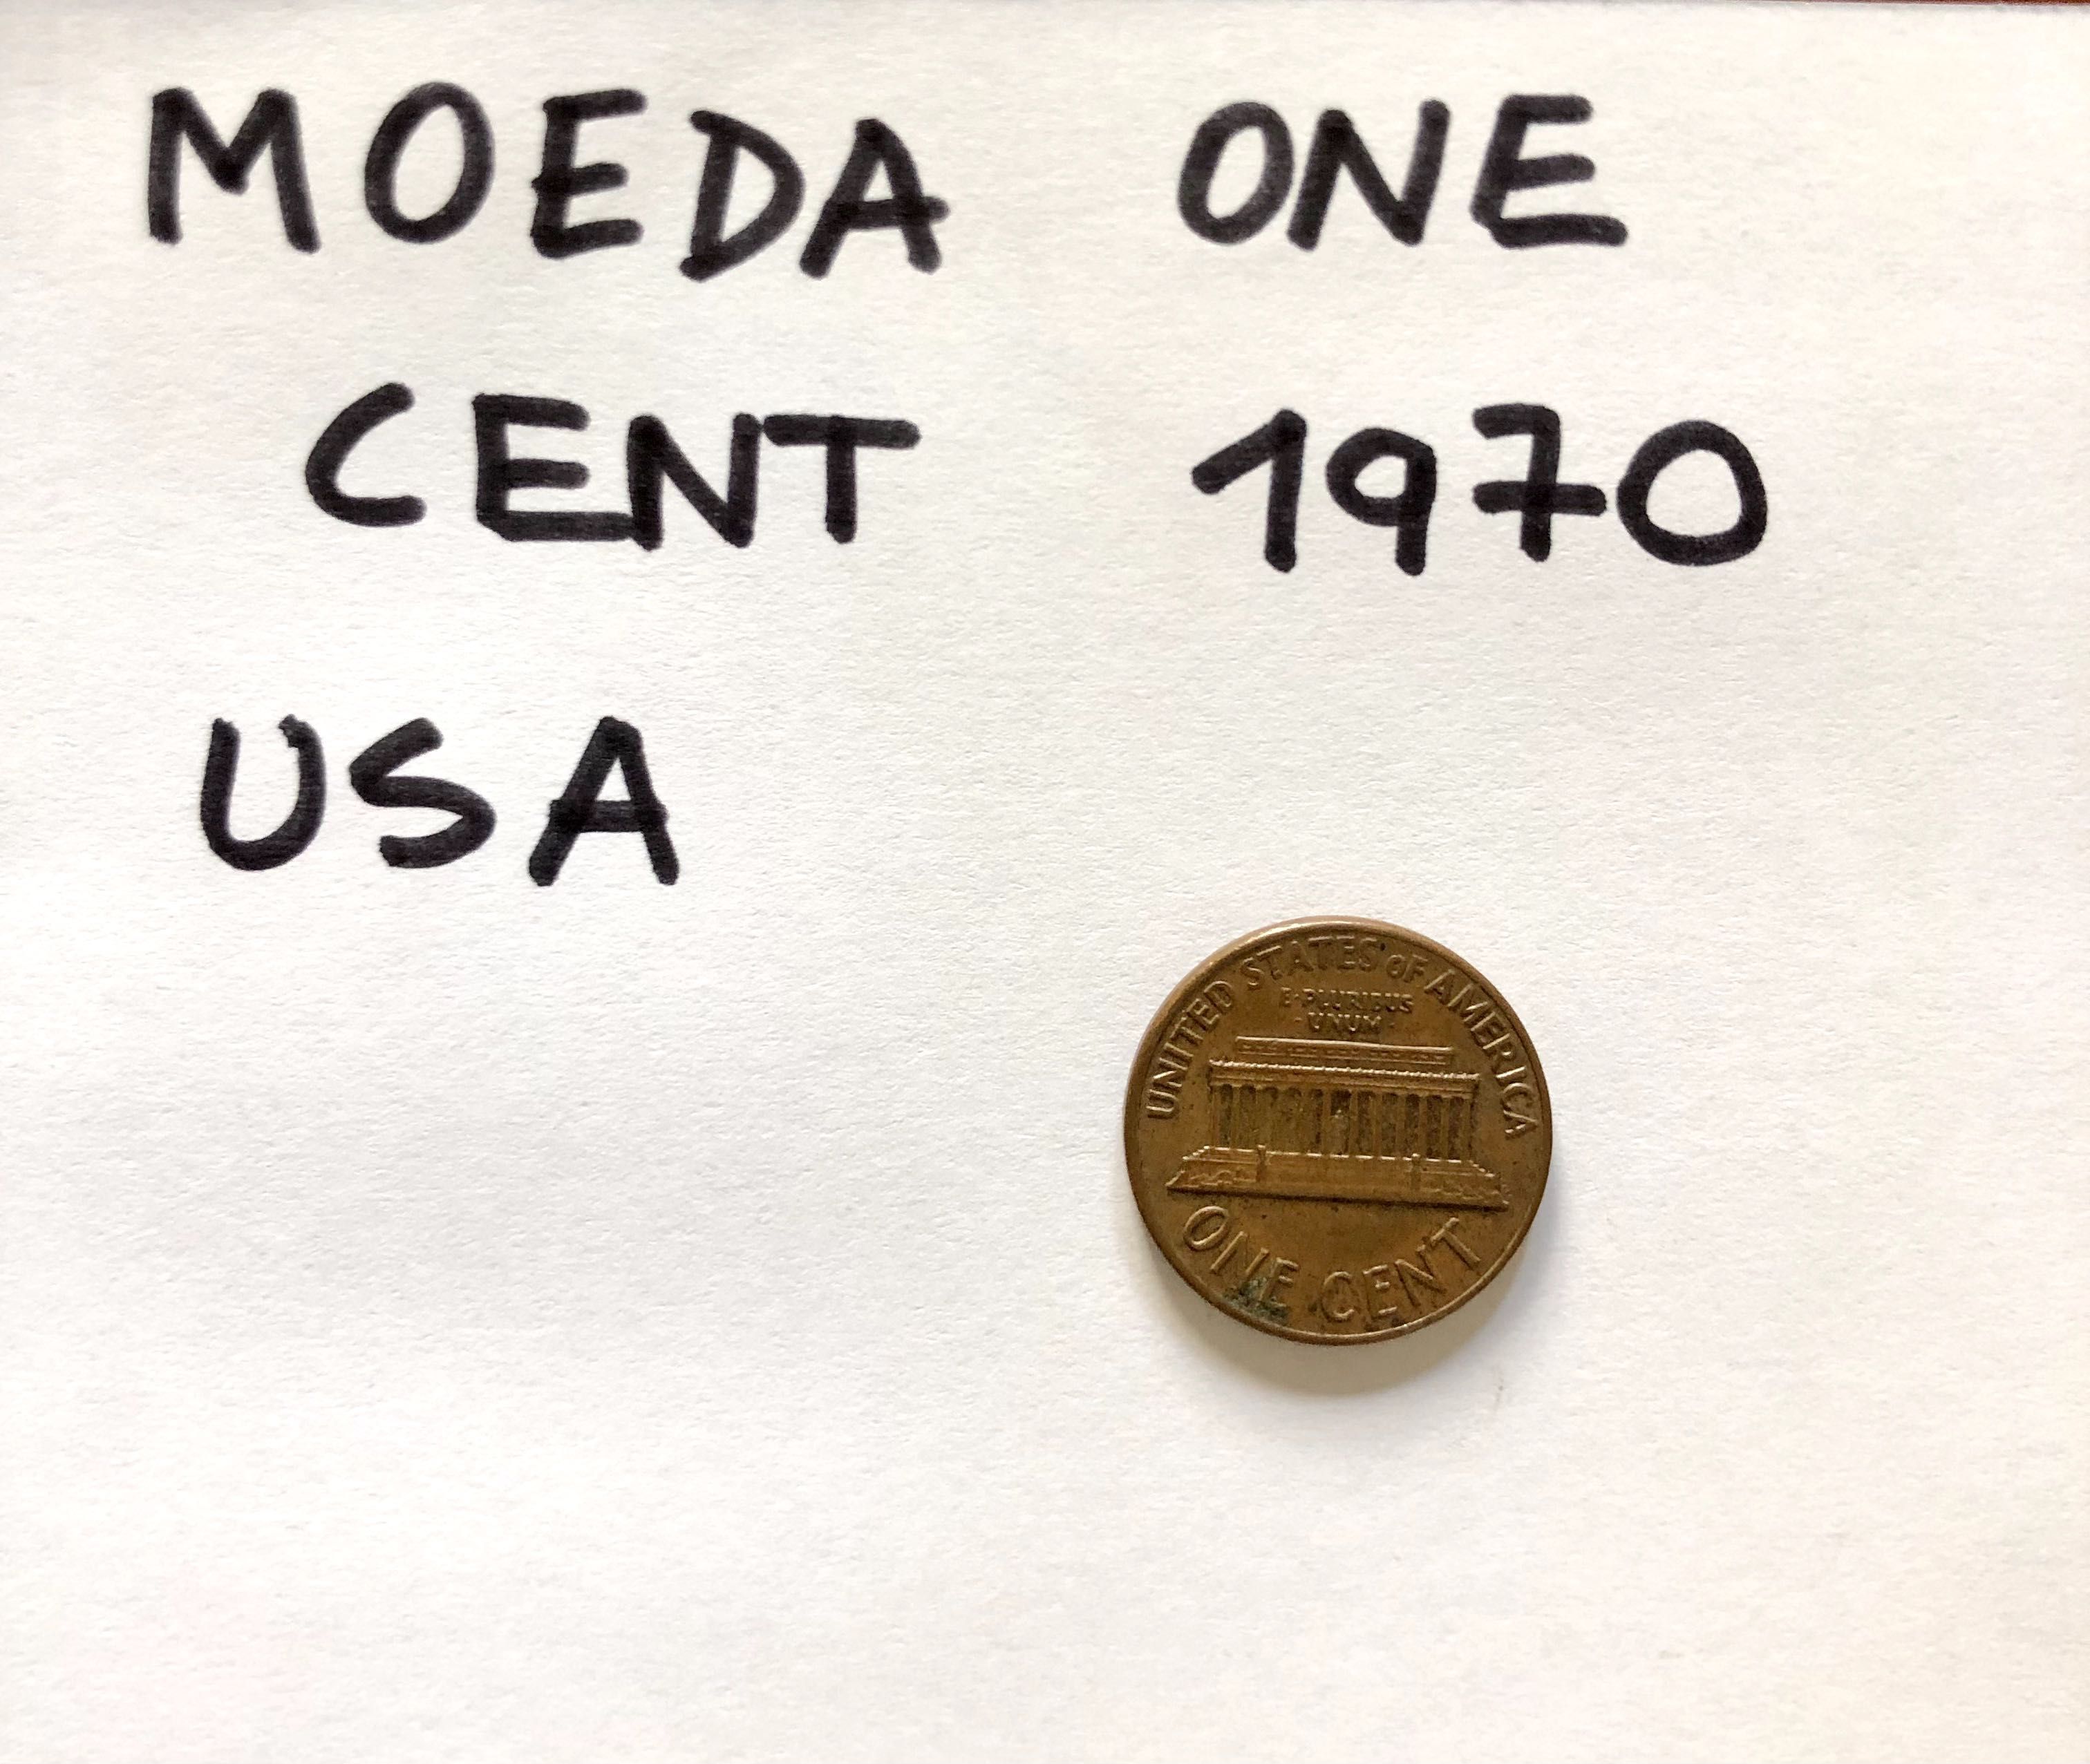 Moeda One Cent 1970 Estados Unidos da América